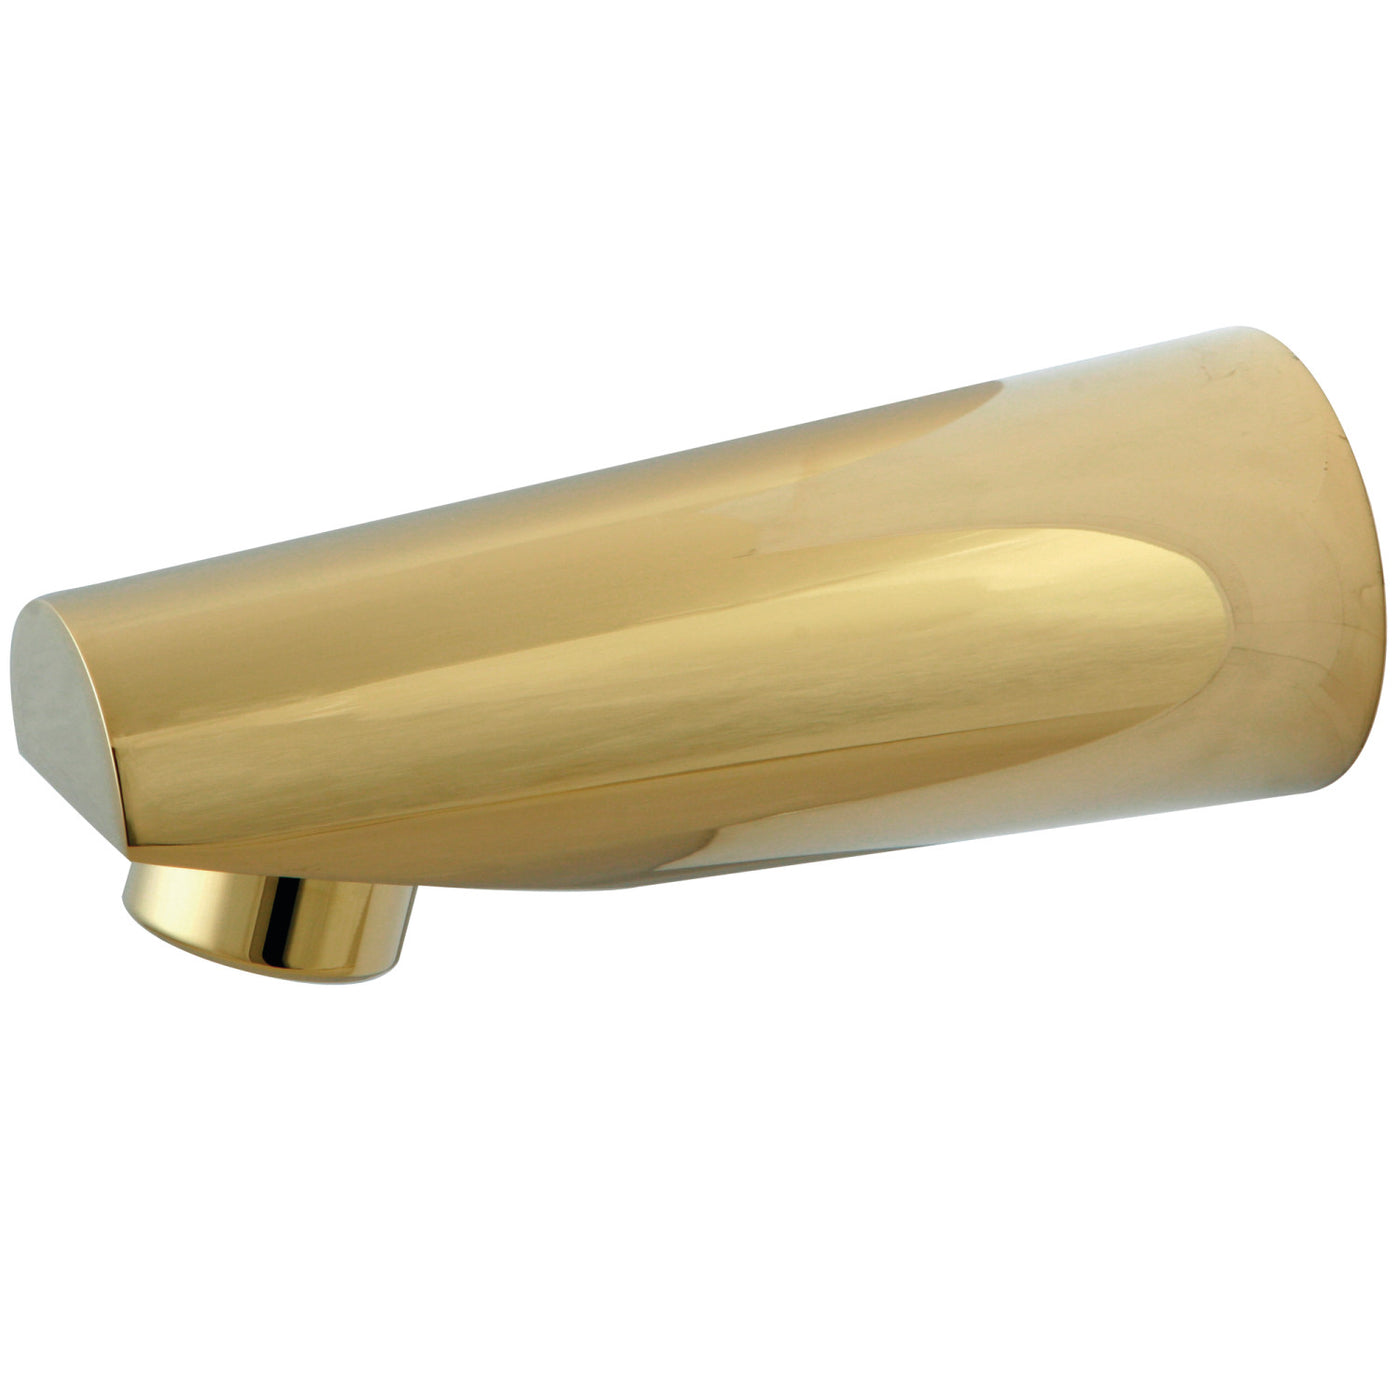 Elements of Design DK6187A2 Tub Faucet Spout, Polished Brass